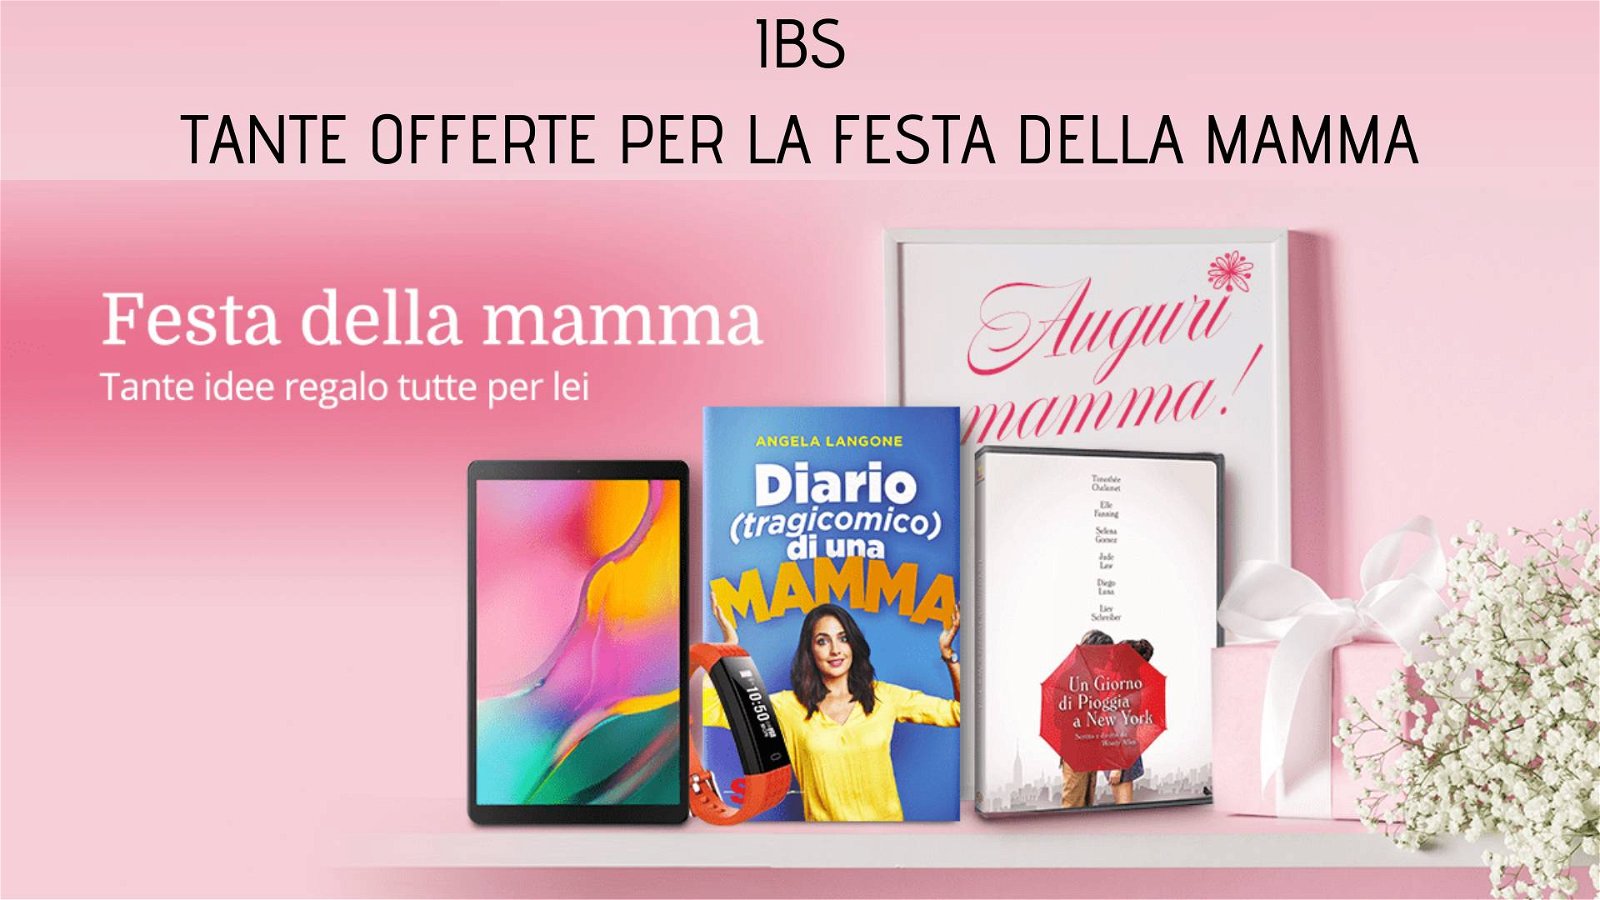 Immagine di IBS: tante offerte per la festa della mamma